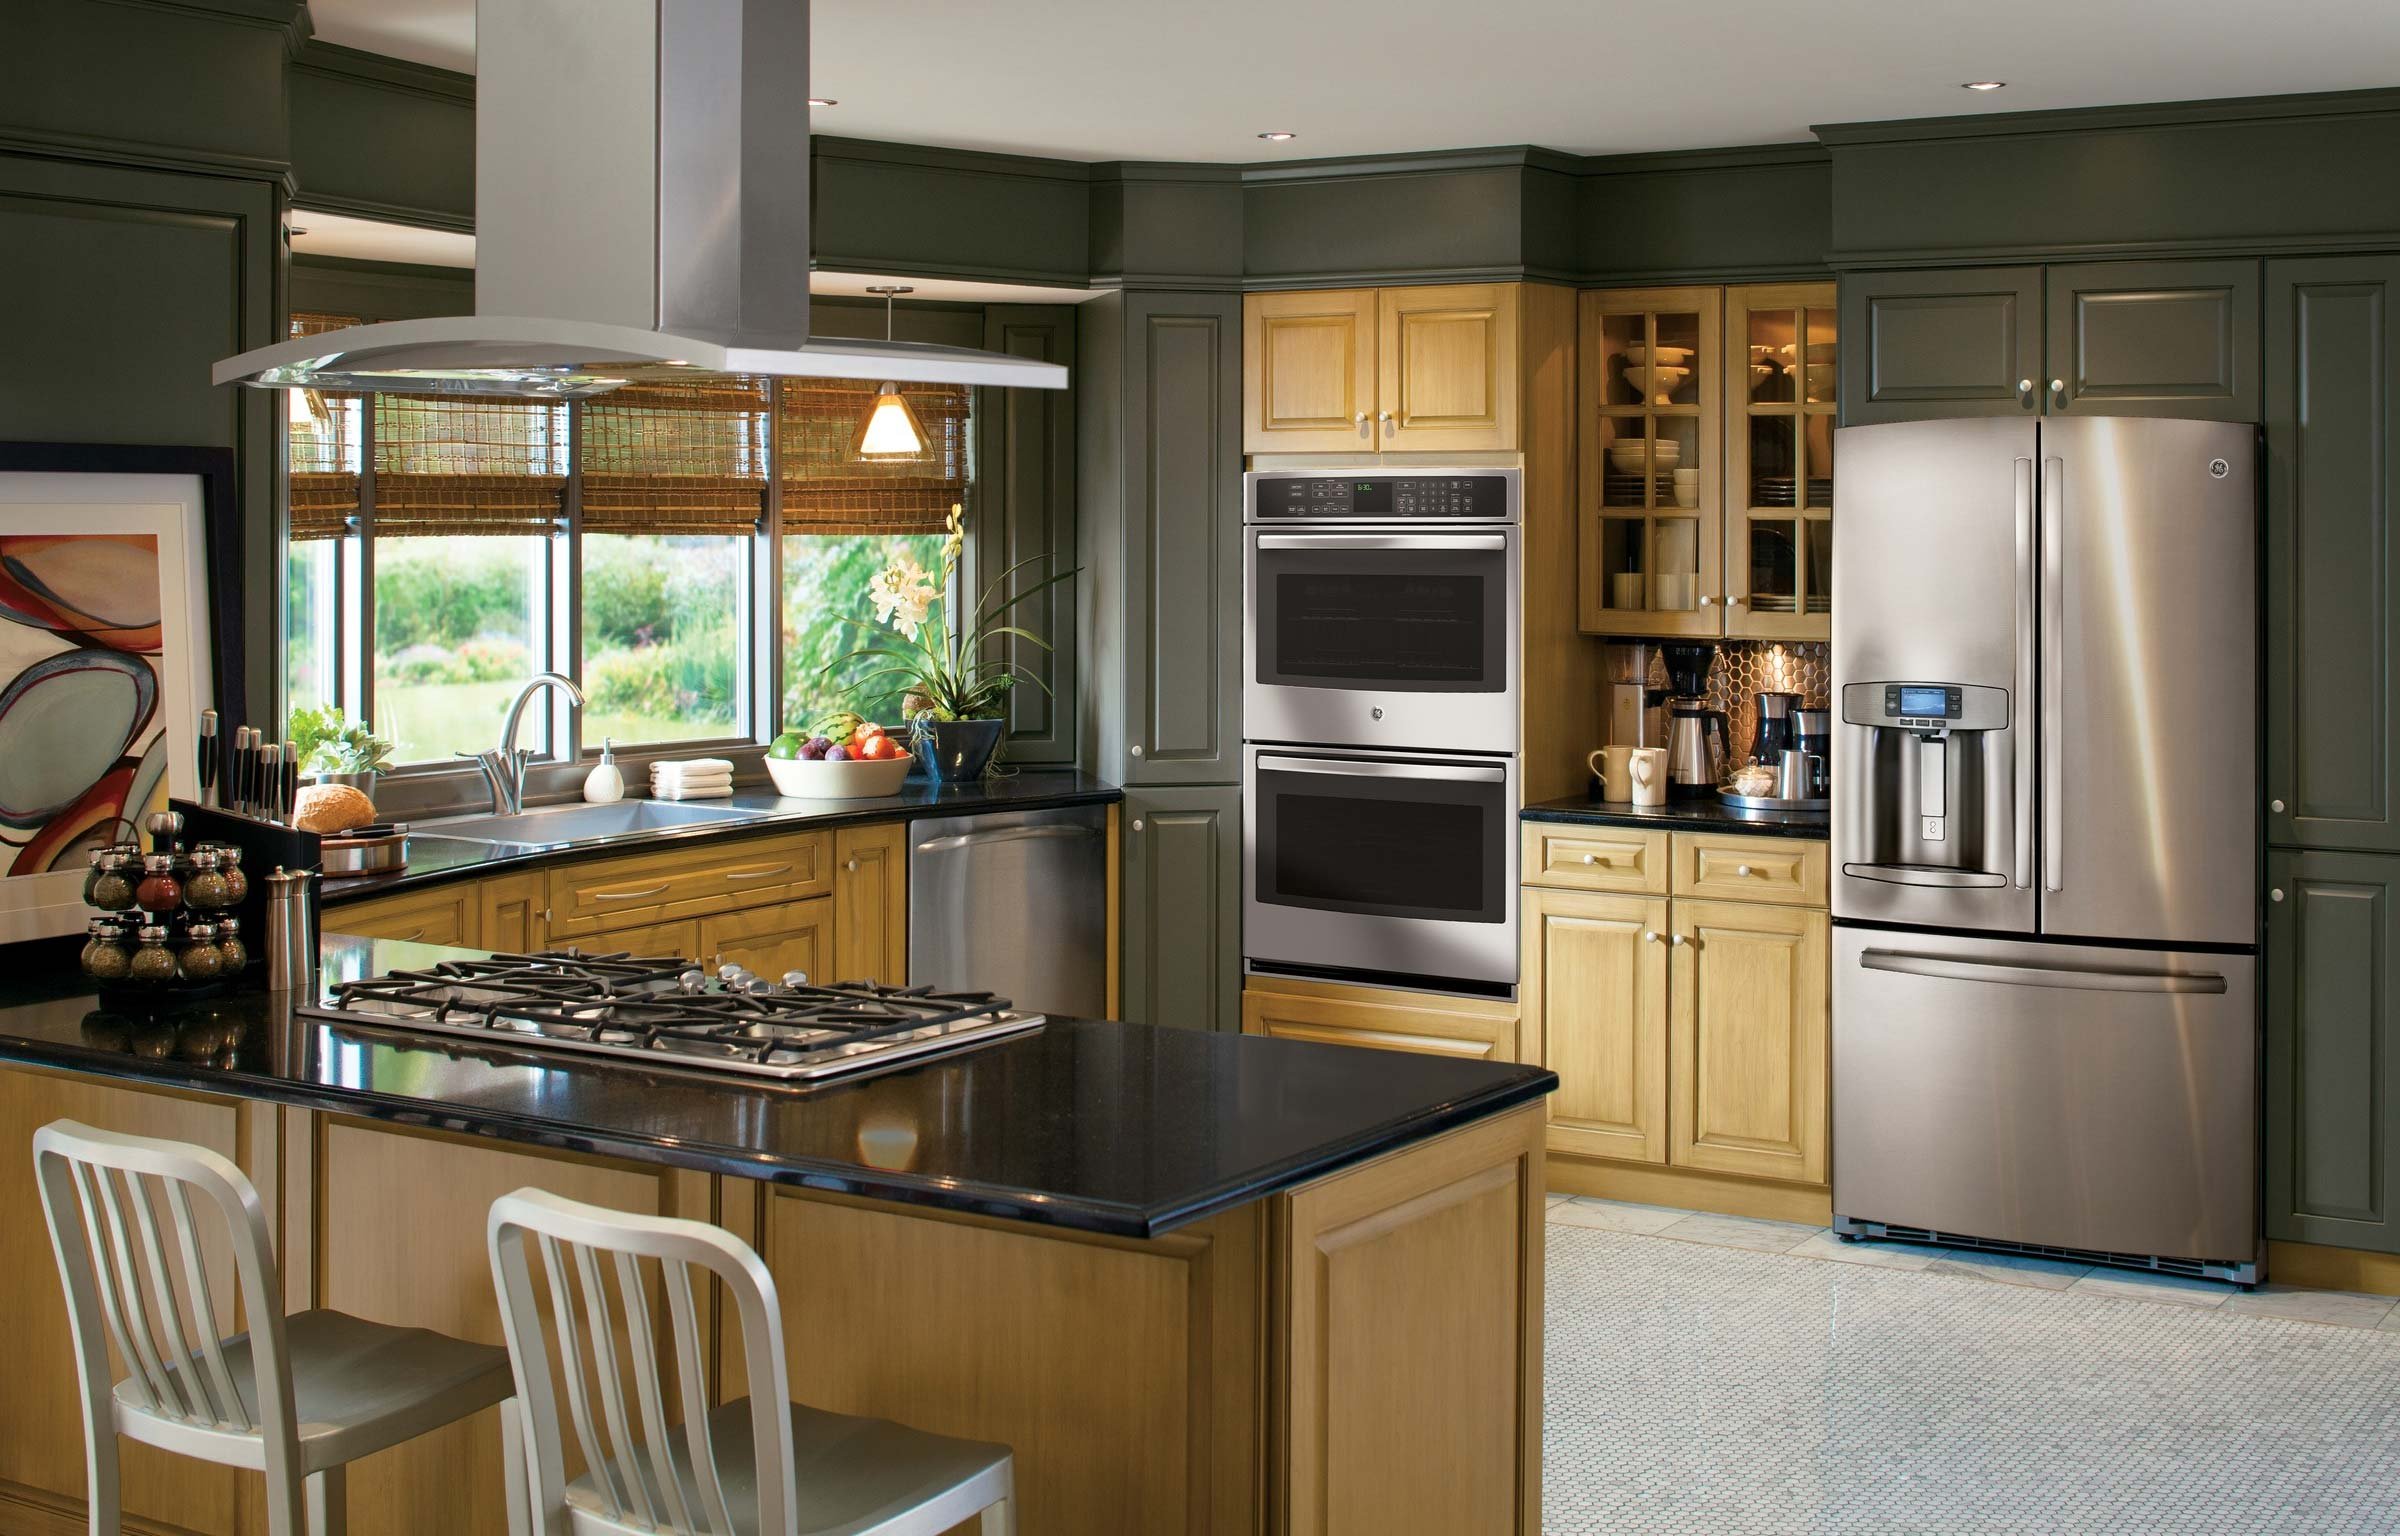 Cupboard glass fridge cooker. Кухня с большим холодильником. Встроенная техника для кухни. Кухня с большим холодильником в интерьере. Кухня с встроенной бытовой техникой.